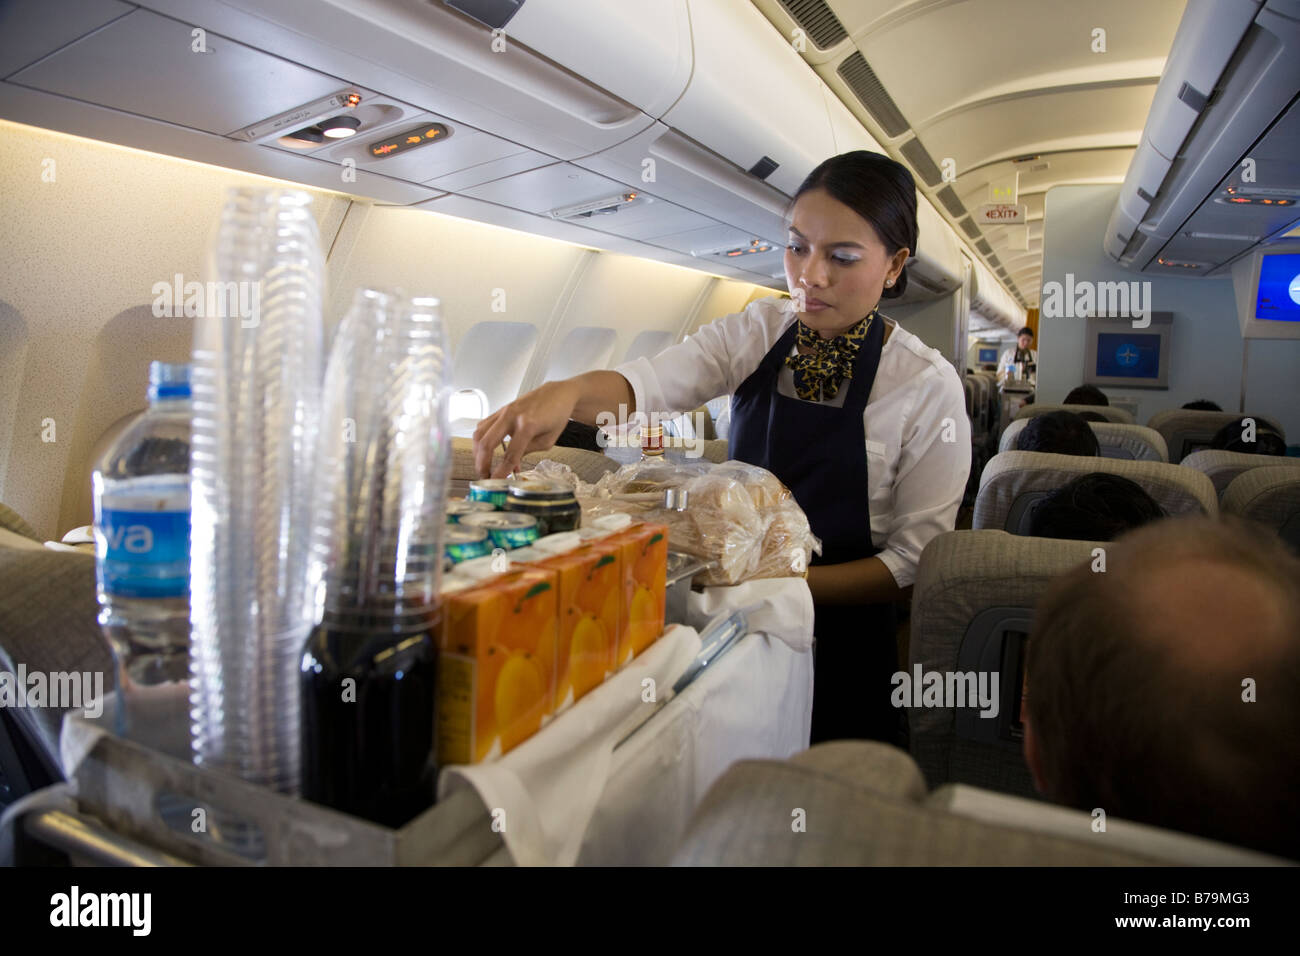 La tripulación de cabina / aire azafata sirve bebidas a los pasajeros de un carro carrito durante un vuelo (45) Foto de stock